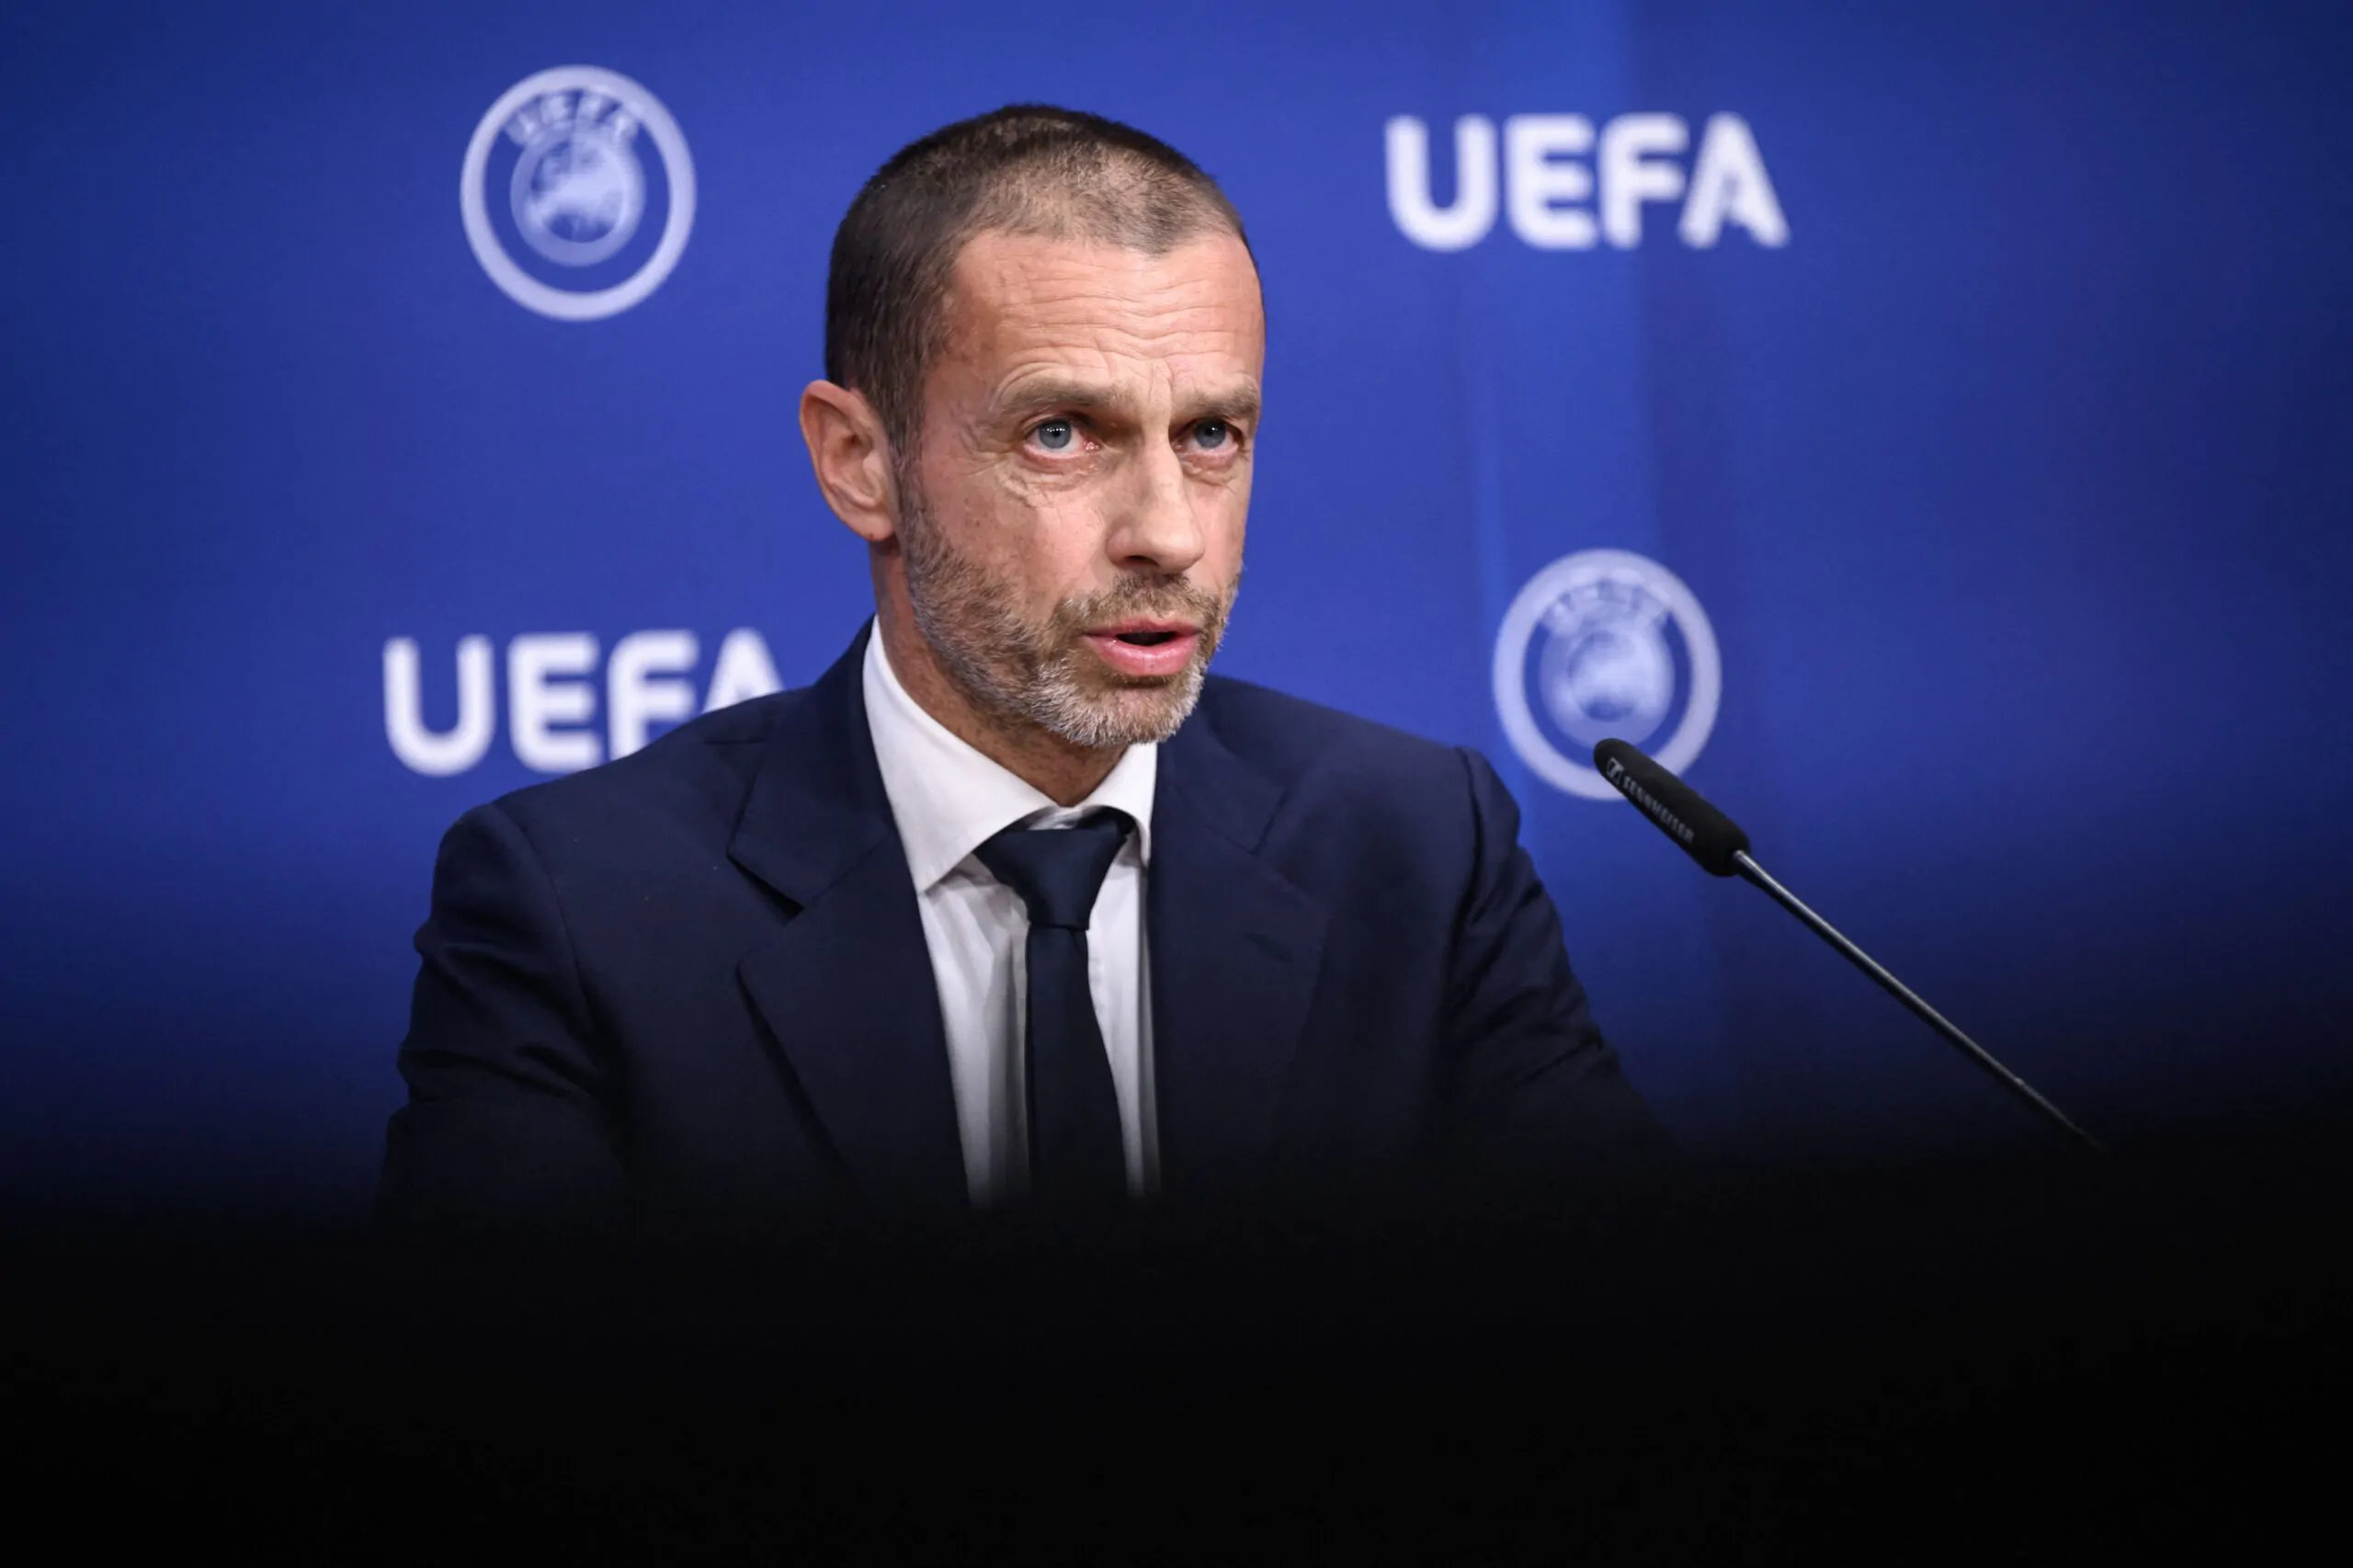 Fair Play Finanziario, L’UEFA punisce la Juventus: i dettagli della sanzione